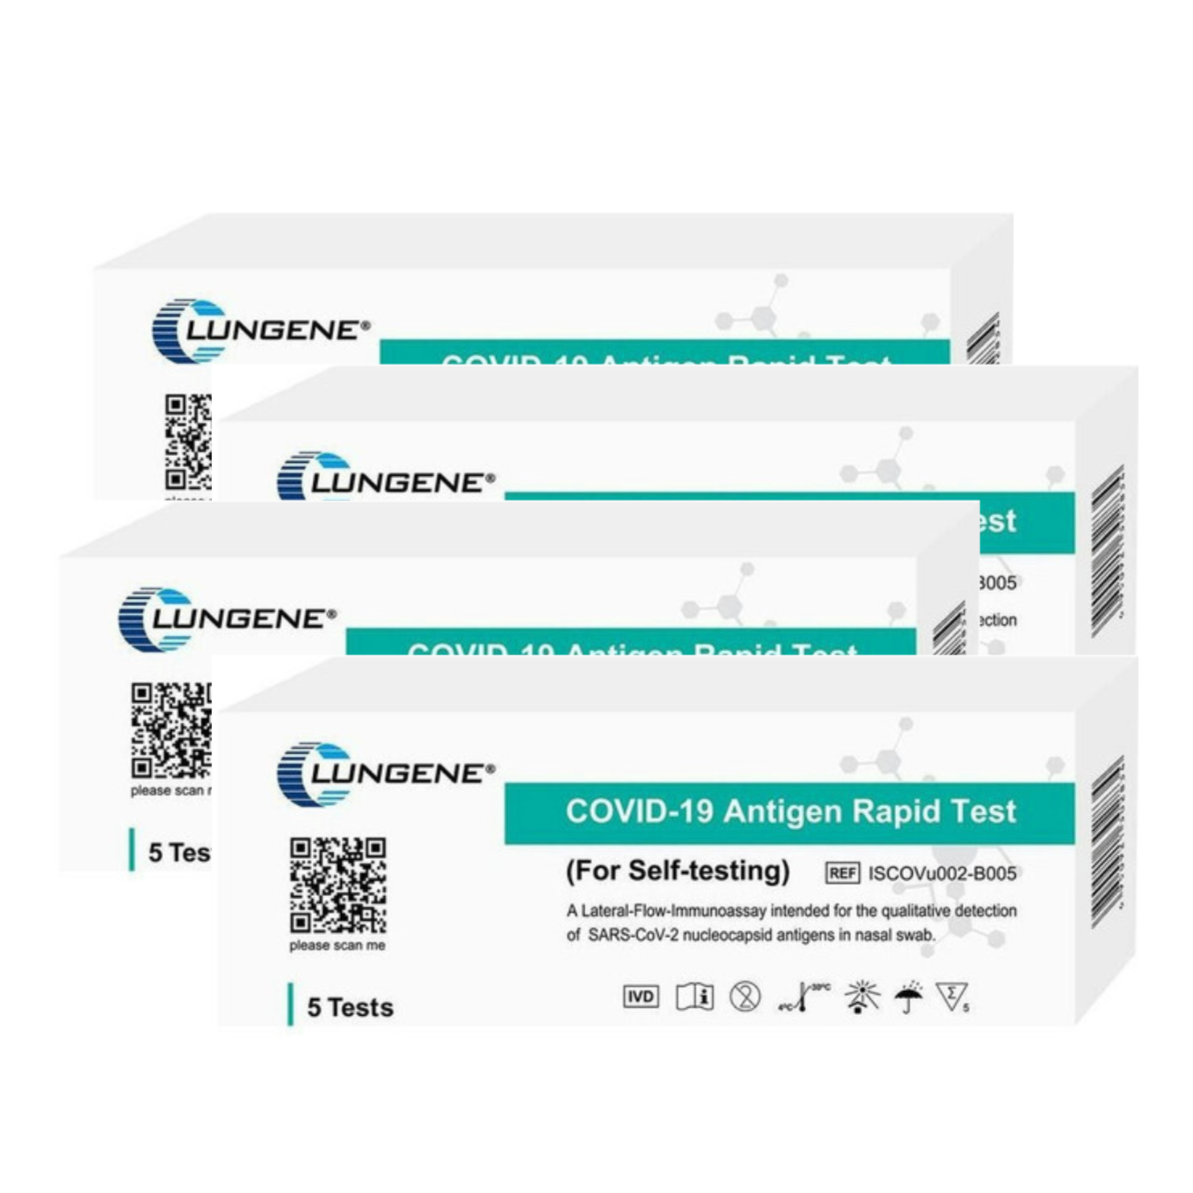 1. COVID-19 Rapid Antigen Test Kits